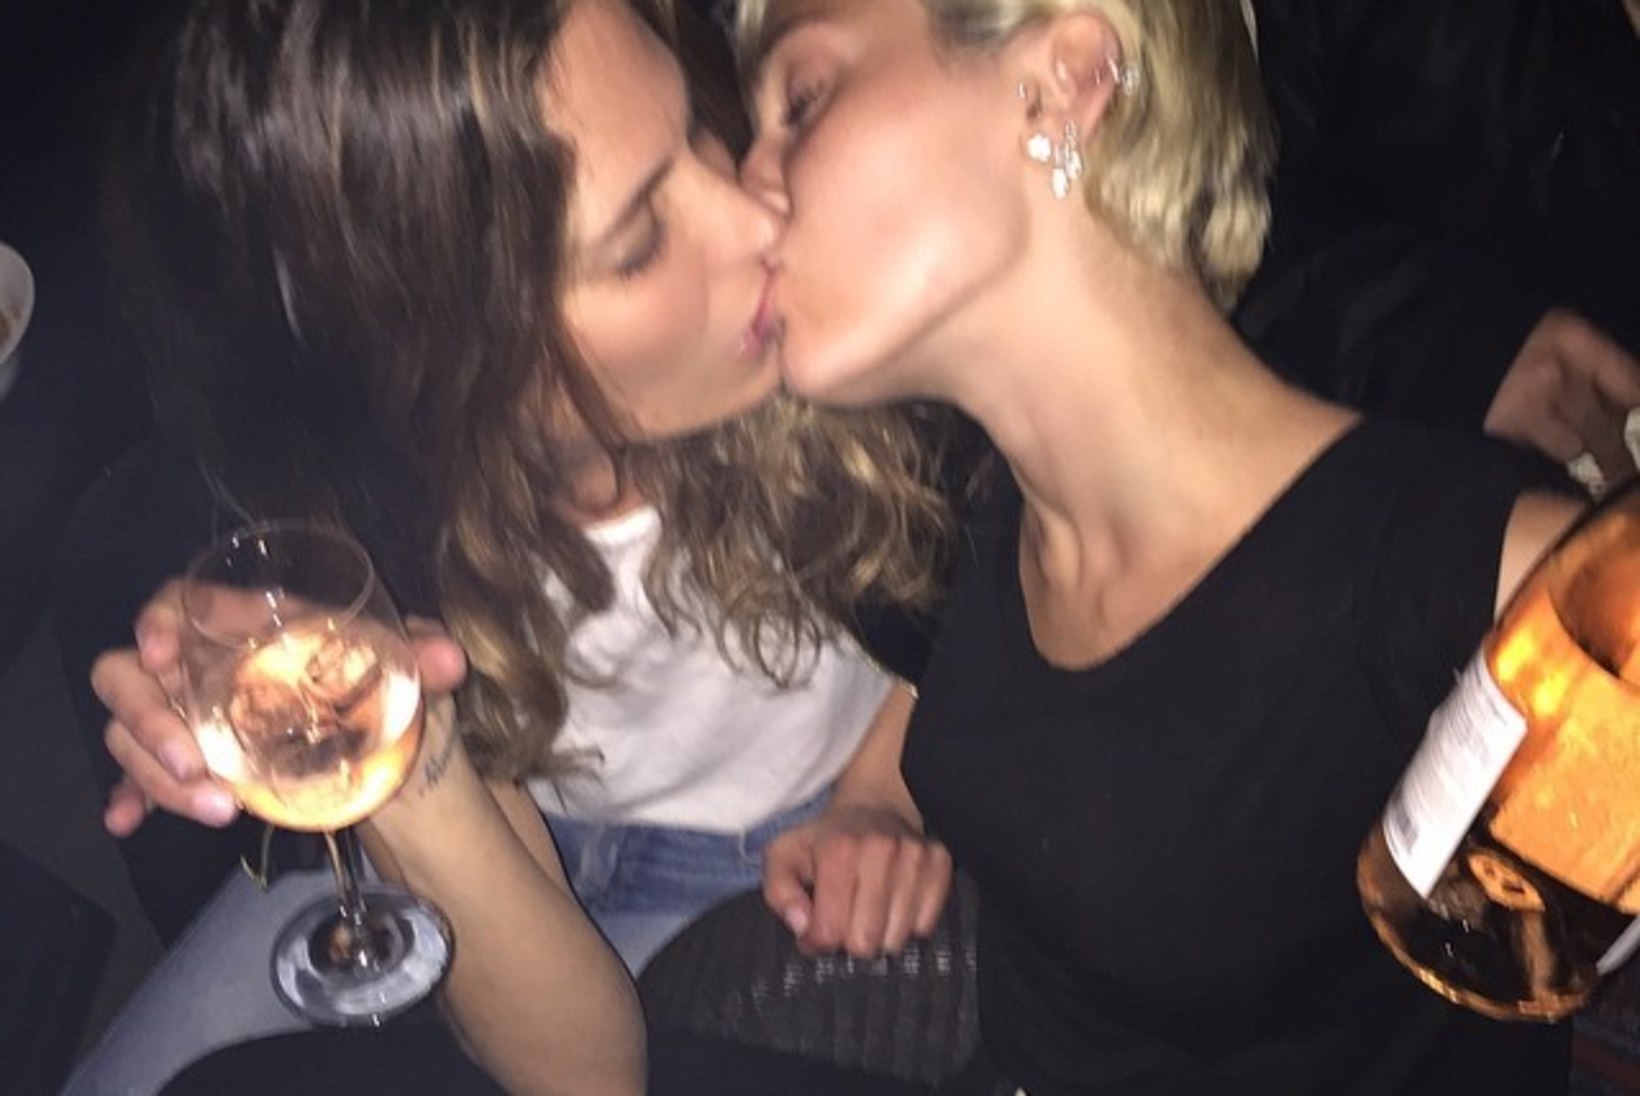 FOTOD: Miley suudles peol oma sõbranna ja saladusliku noormehega!